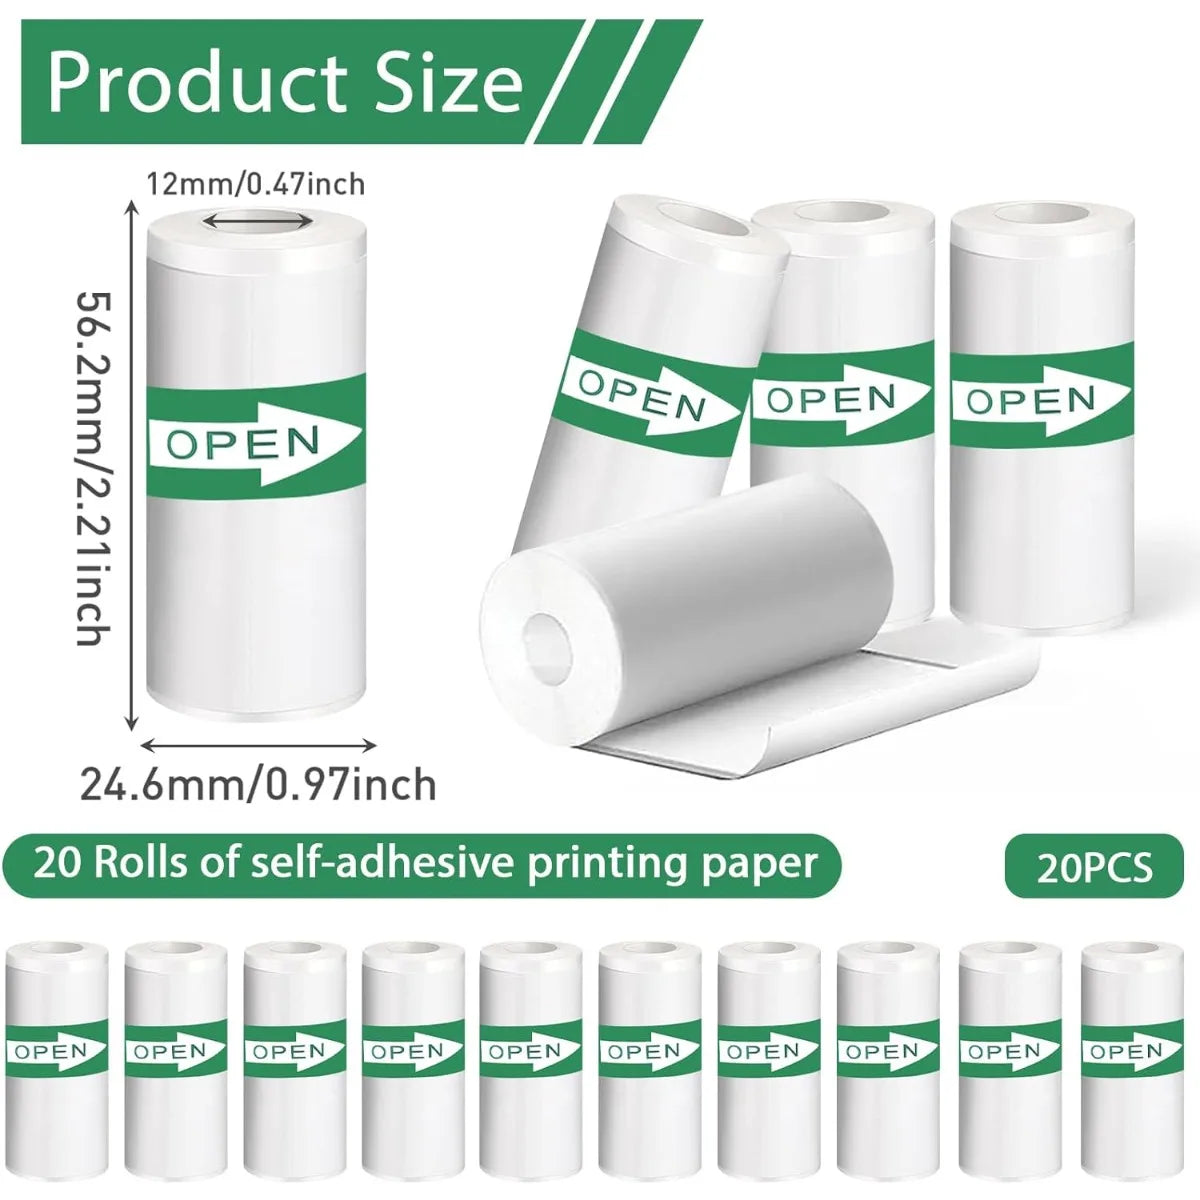 Papier autocollant thermique auto-adhésif pour Mini imprimante Photo, 20 pièces, 5.7x2.5cm